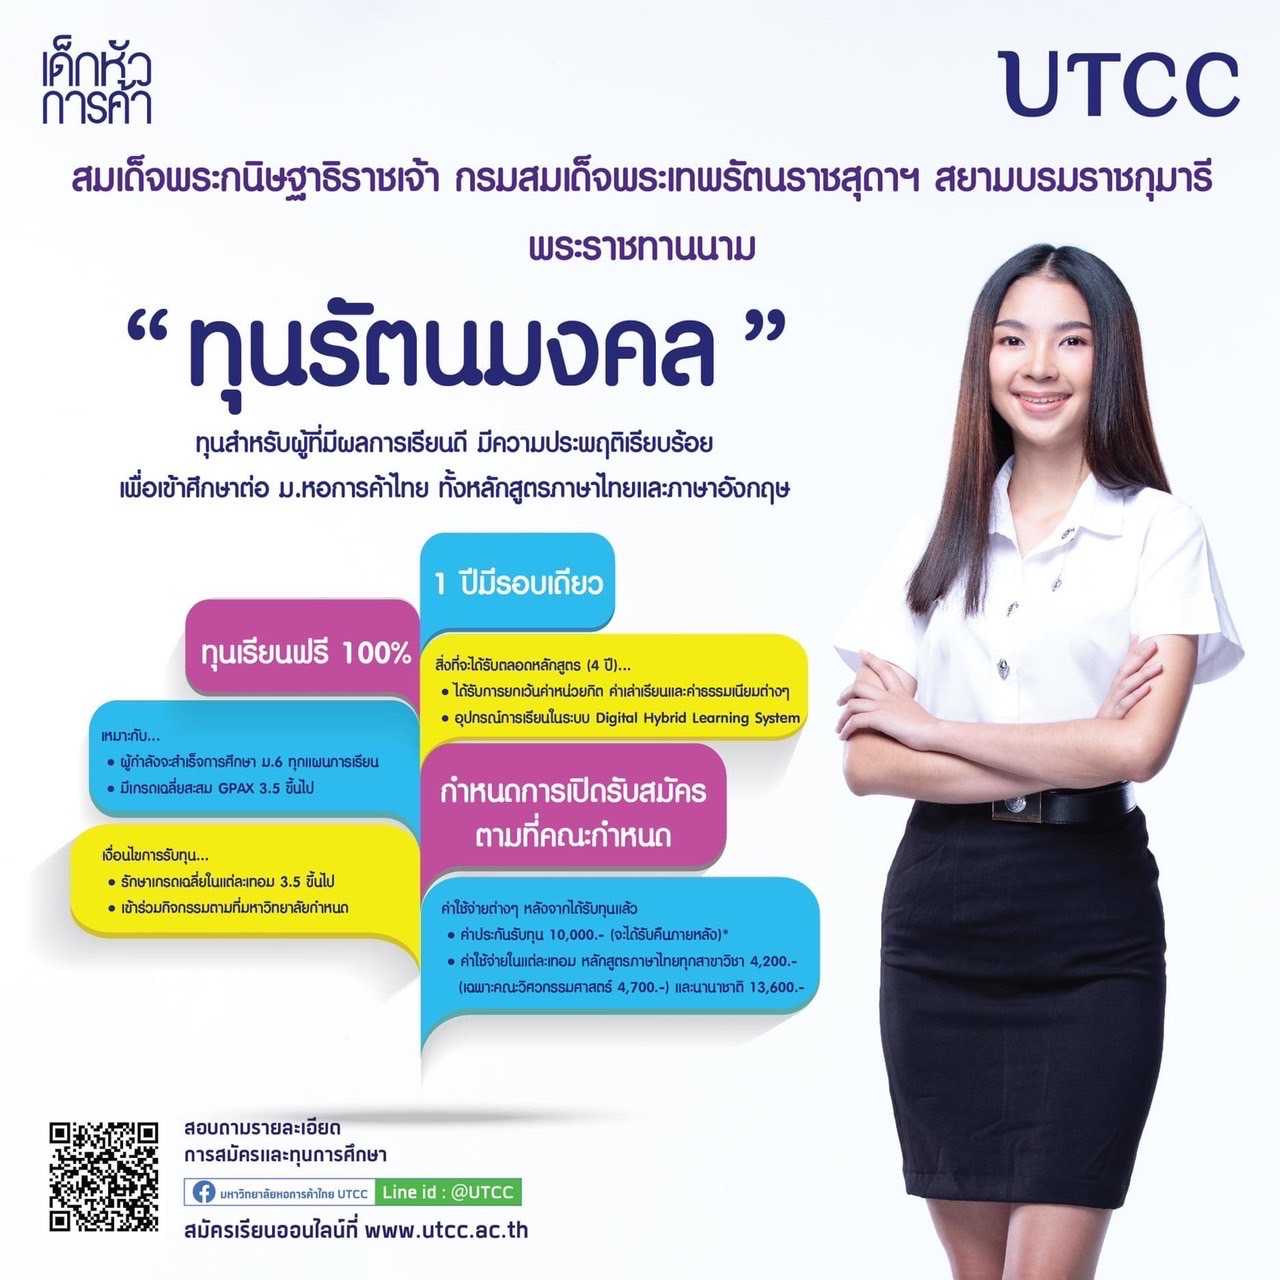 ทุน ม.หอการค้าไทย 65 - UTCC 1 1 - ภาพที่ 3